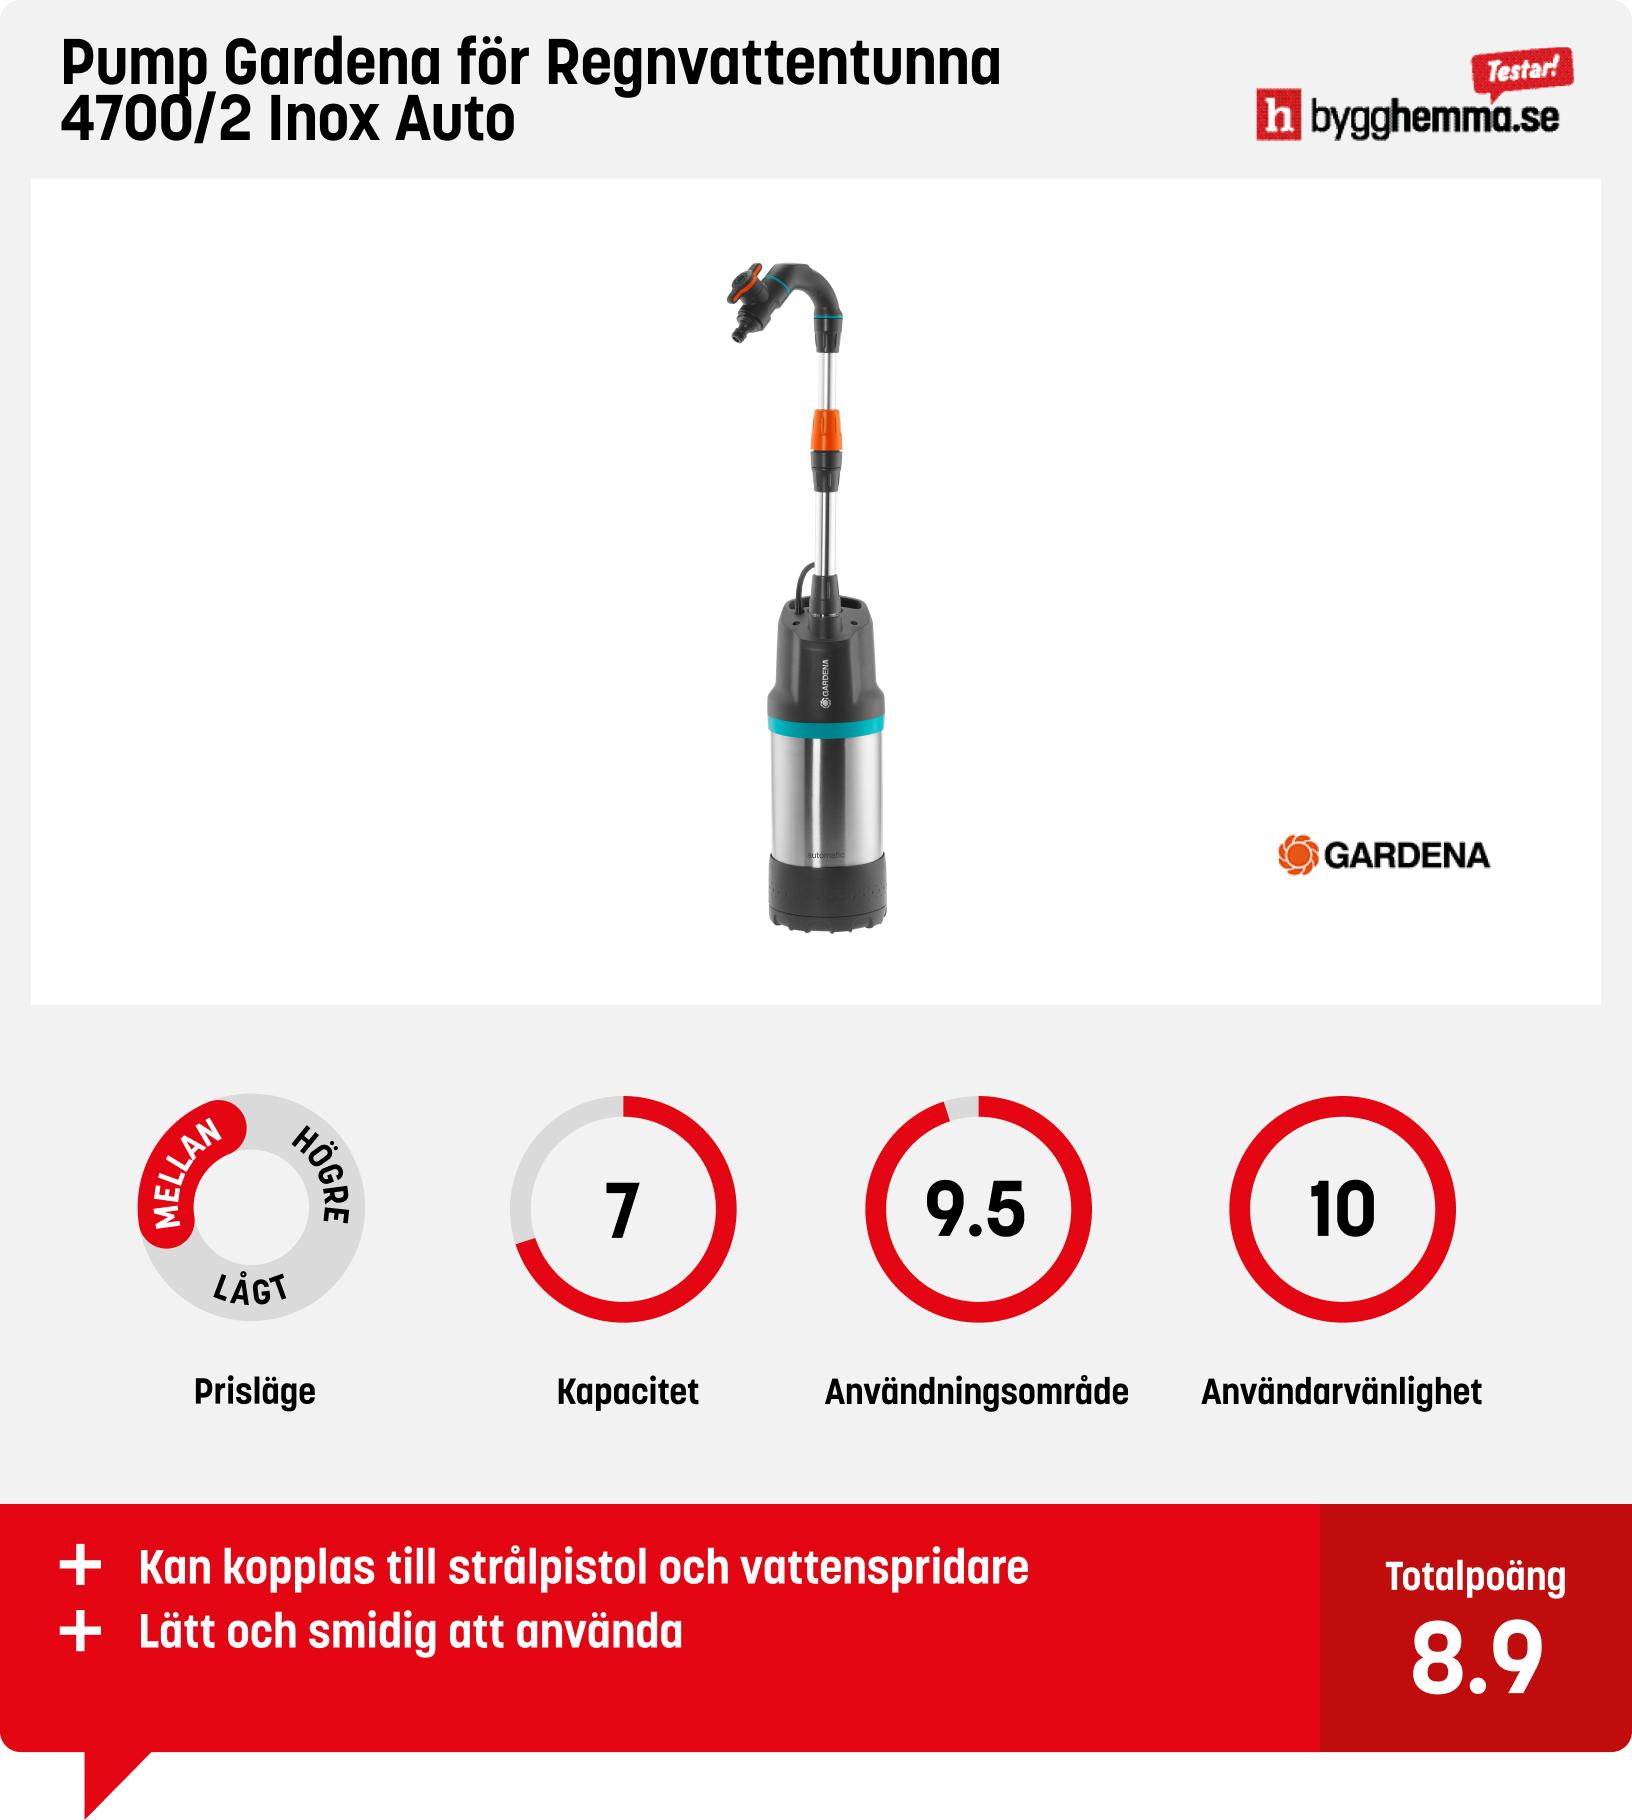 Dränkbar pump bäst i test - Pump Gardena för Regnvattentunna 4700/2 Inox Auto